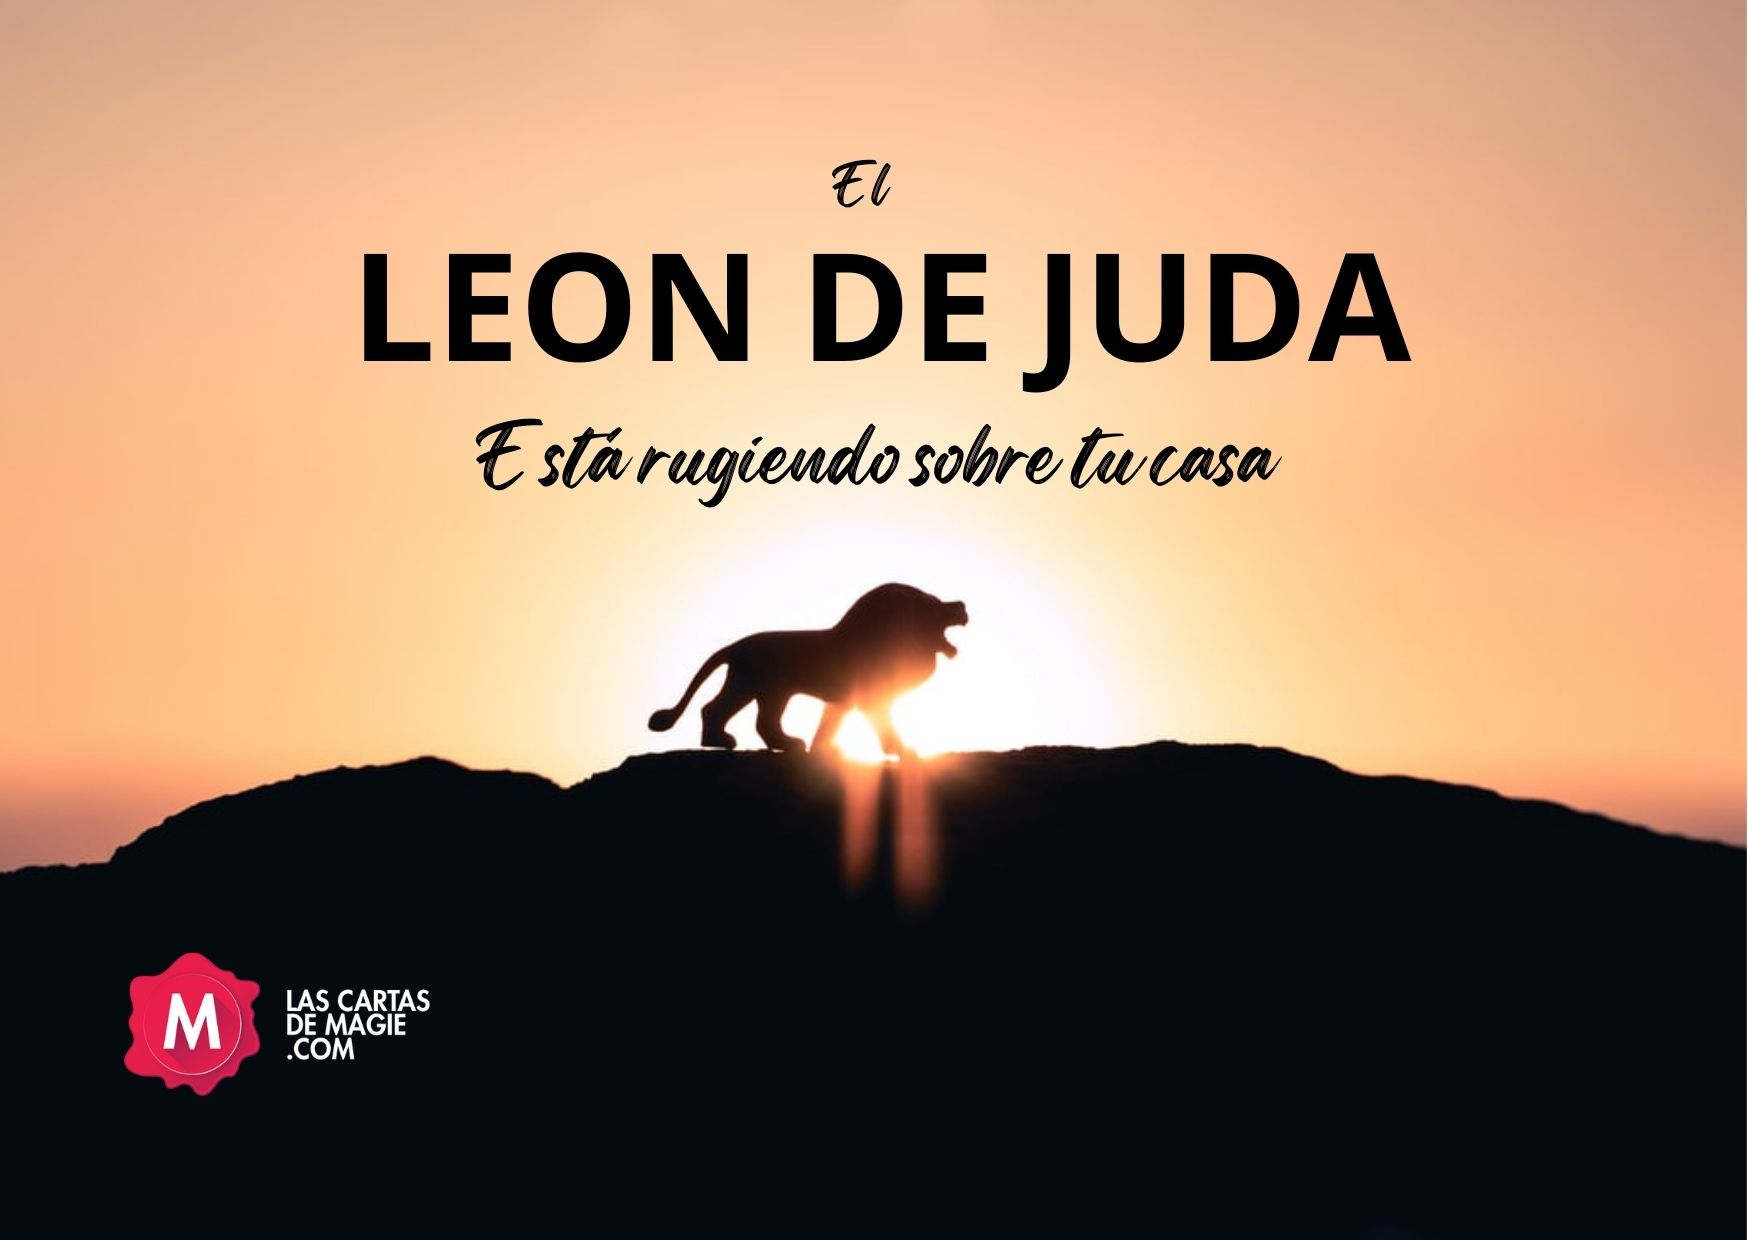 El León de Judá esta rugiendo sobre tu casa – Las Cartas de Magie